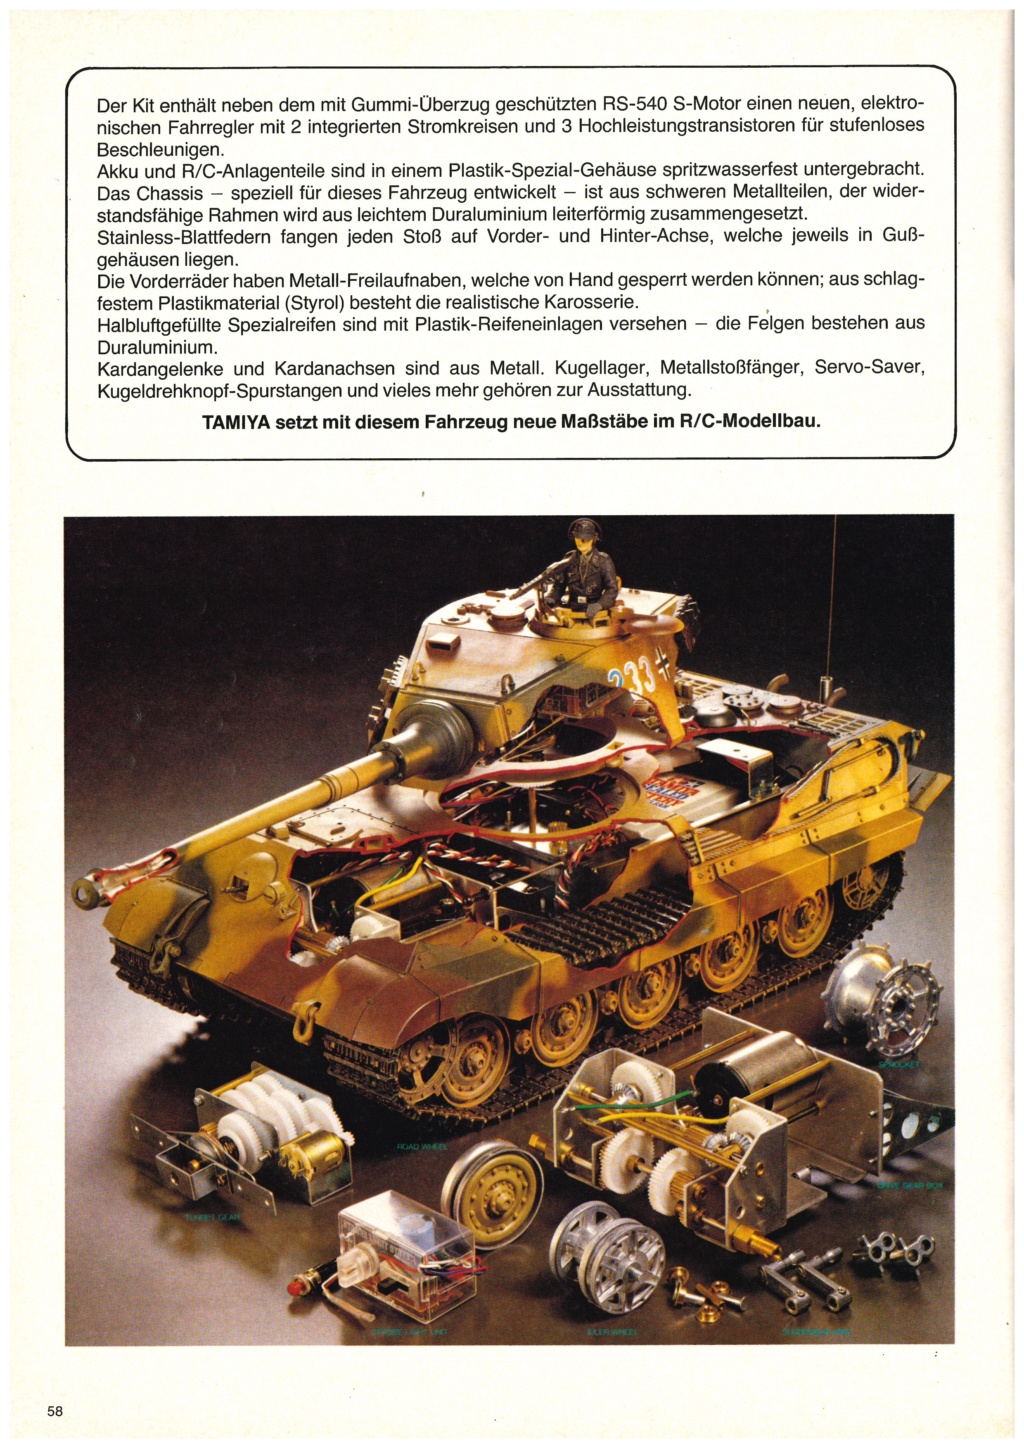 [TAMIYA HEINZ BEHRINGER 1982] Catalogue allemand importateur HEINZ BEHRINGER 1982 Tami3318